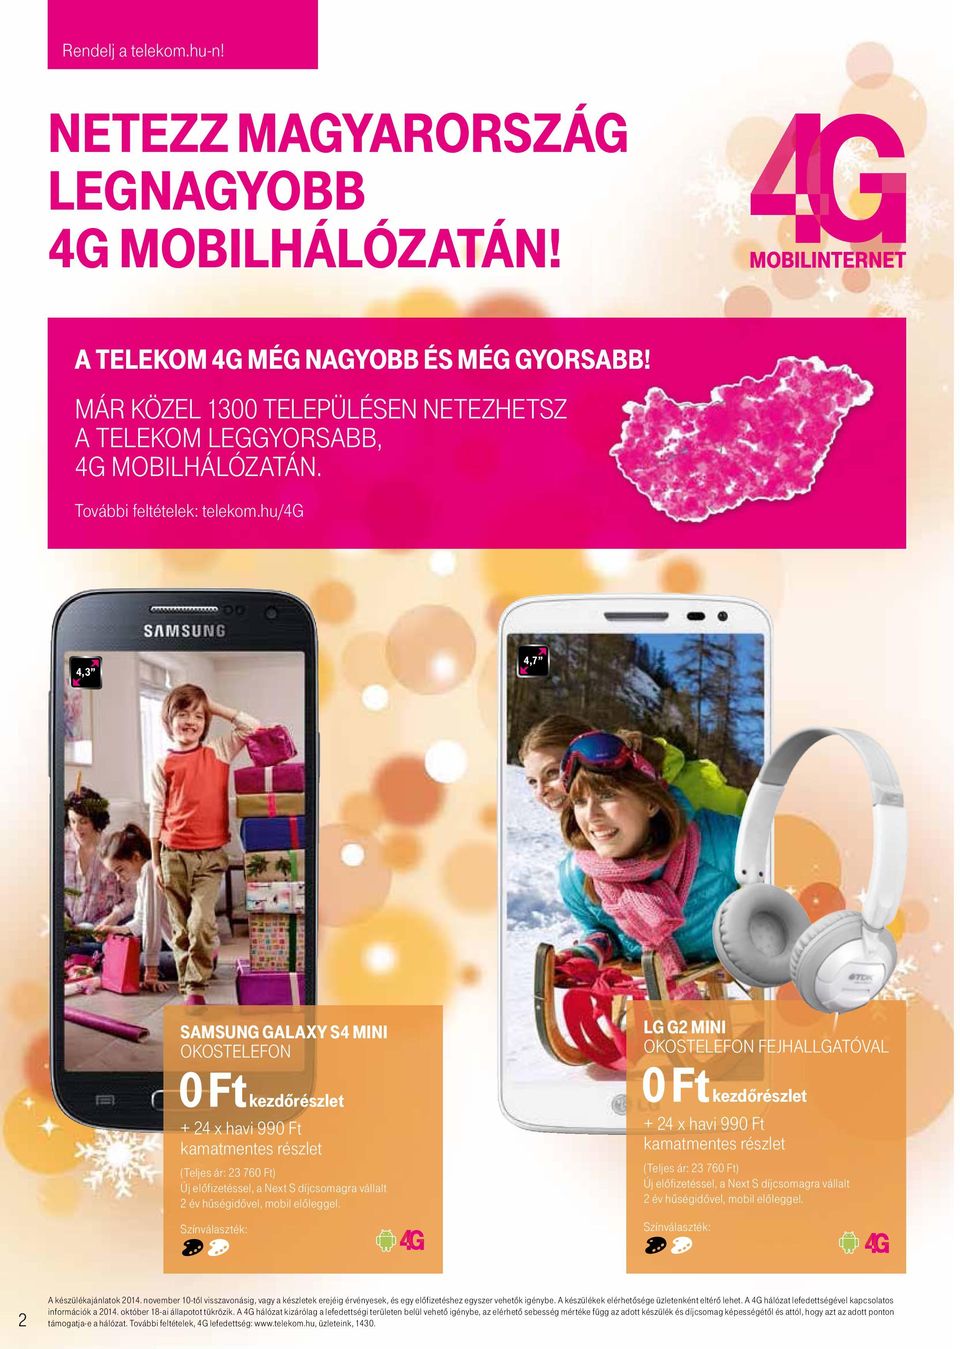 telekom 0 Ft kezdőrészlet Ünnepi ajándék ötletek a Telekomtól telekom.hu  rendelj online SorbAN ÁllÁS NÉlKÜl! - PDF Ingyenes letöltés